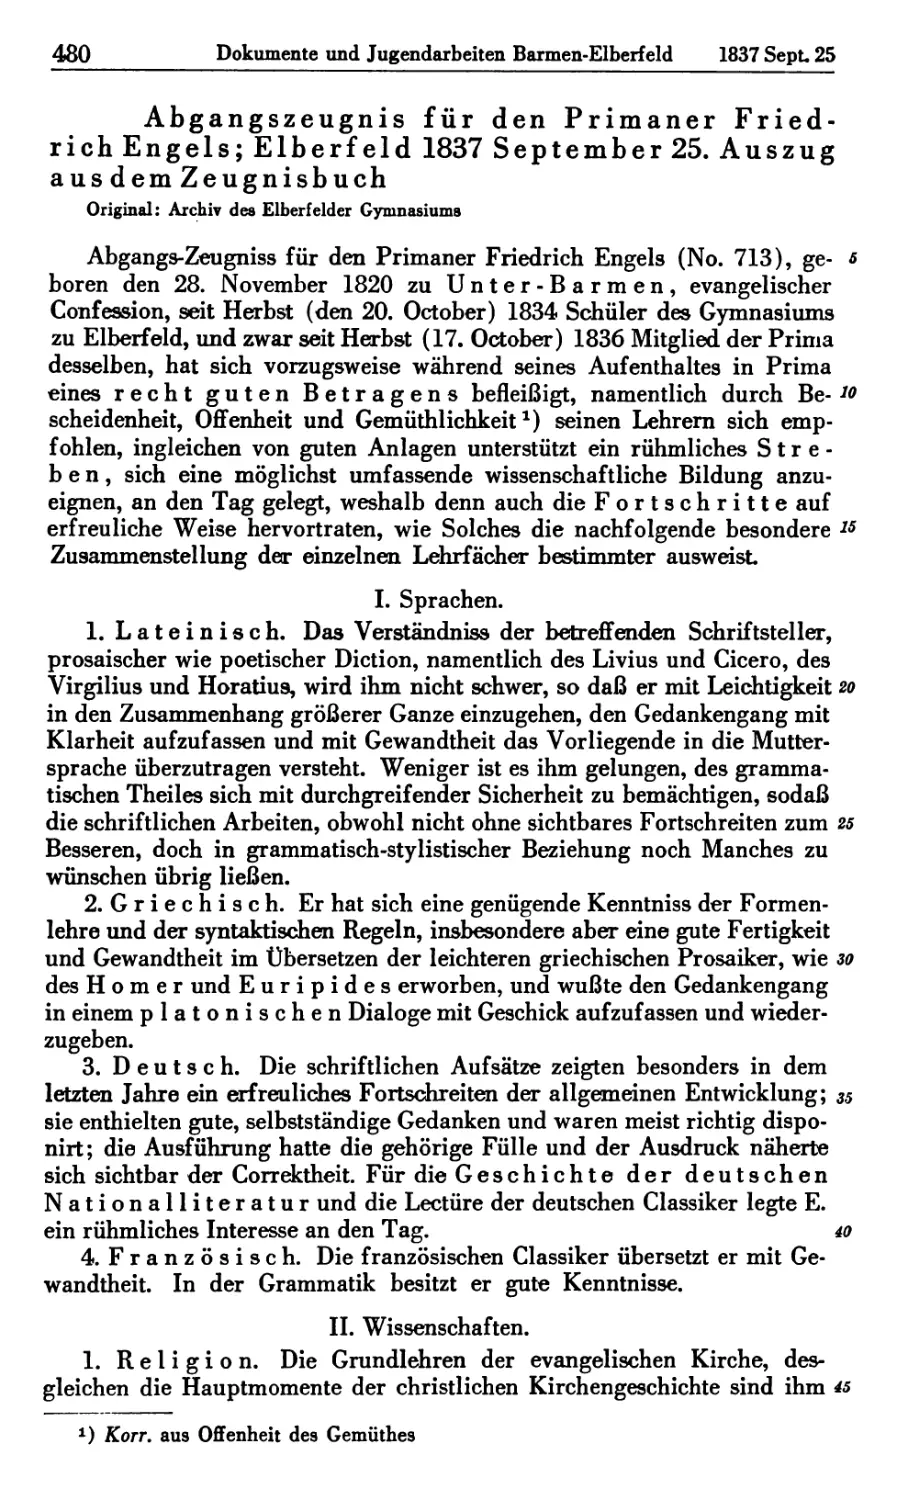 10. Abgangszeugnis für den Primaner Friedrich Engels; Elberfeld 1837 September 25